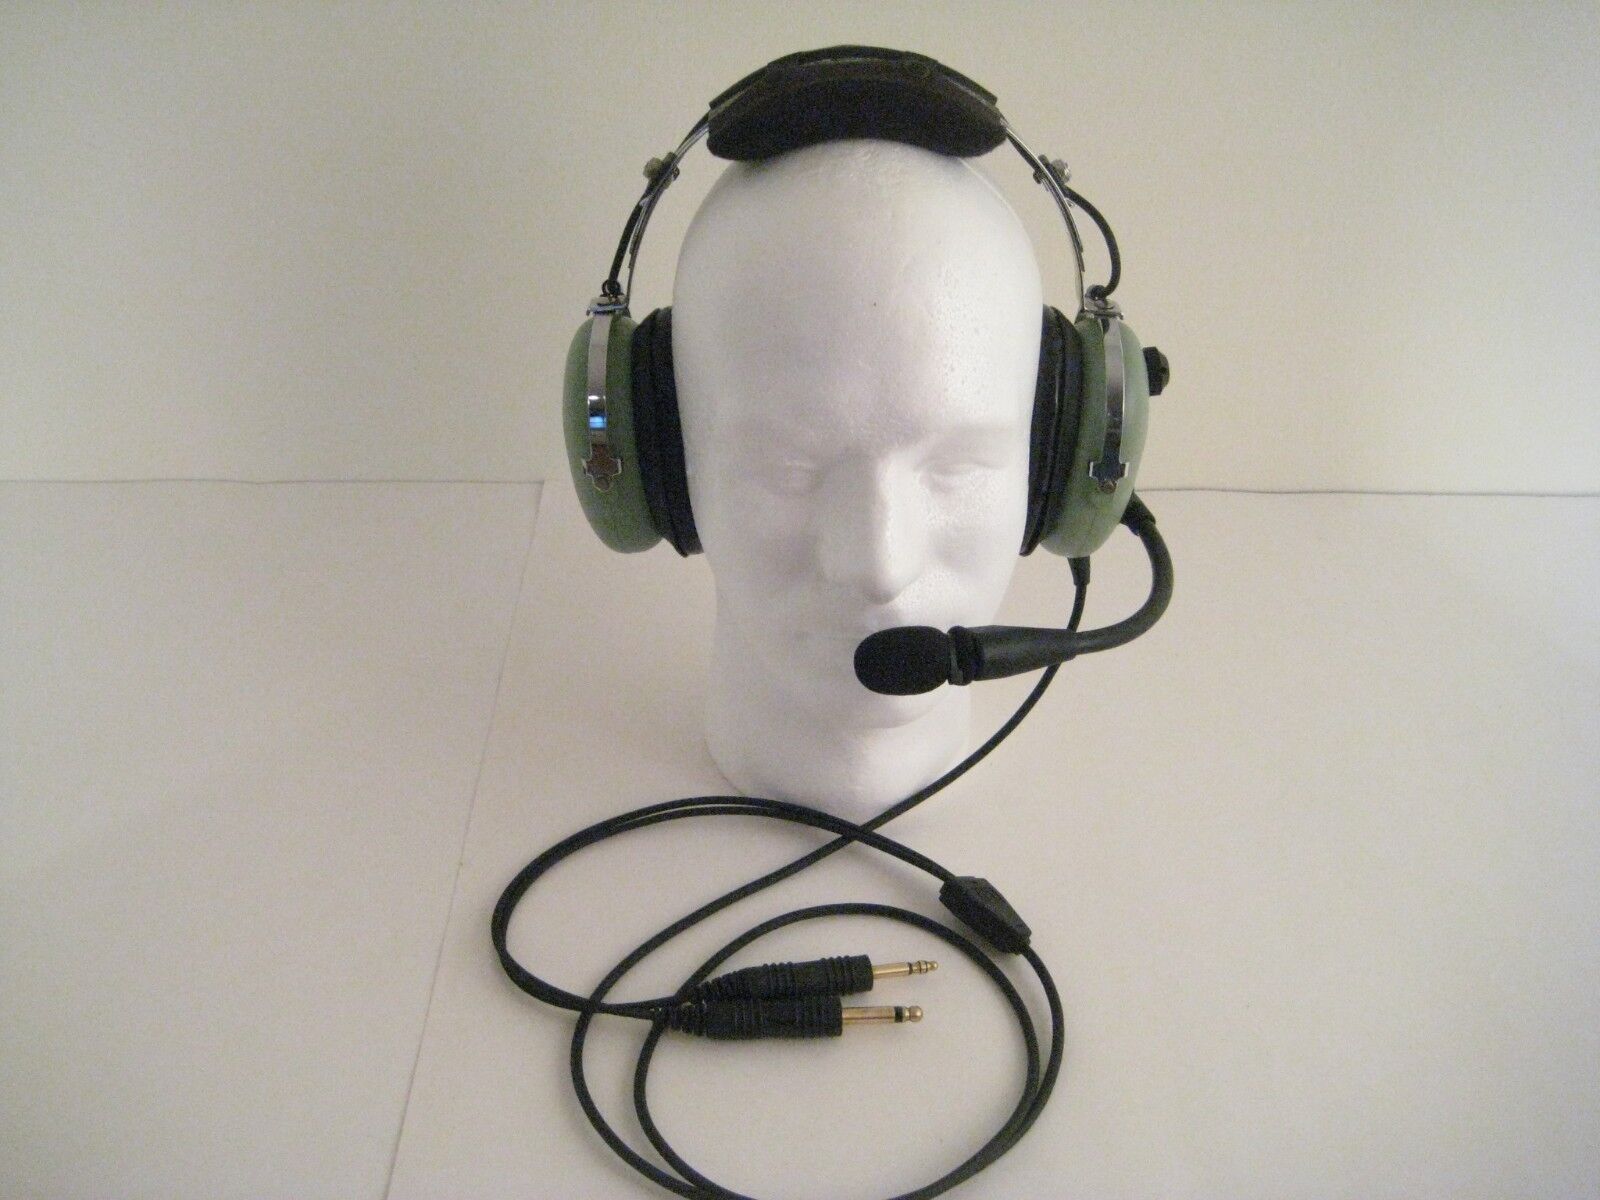 オーディオ機器 ヘッドフォン David Clark H10 13.4 Aviation Headset for sale online | eBay